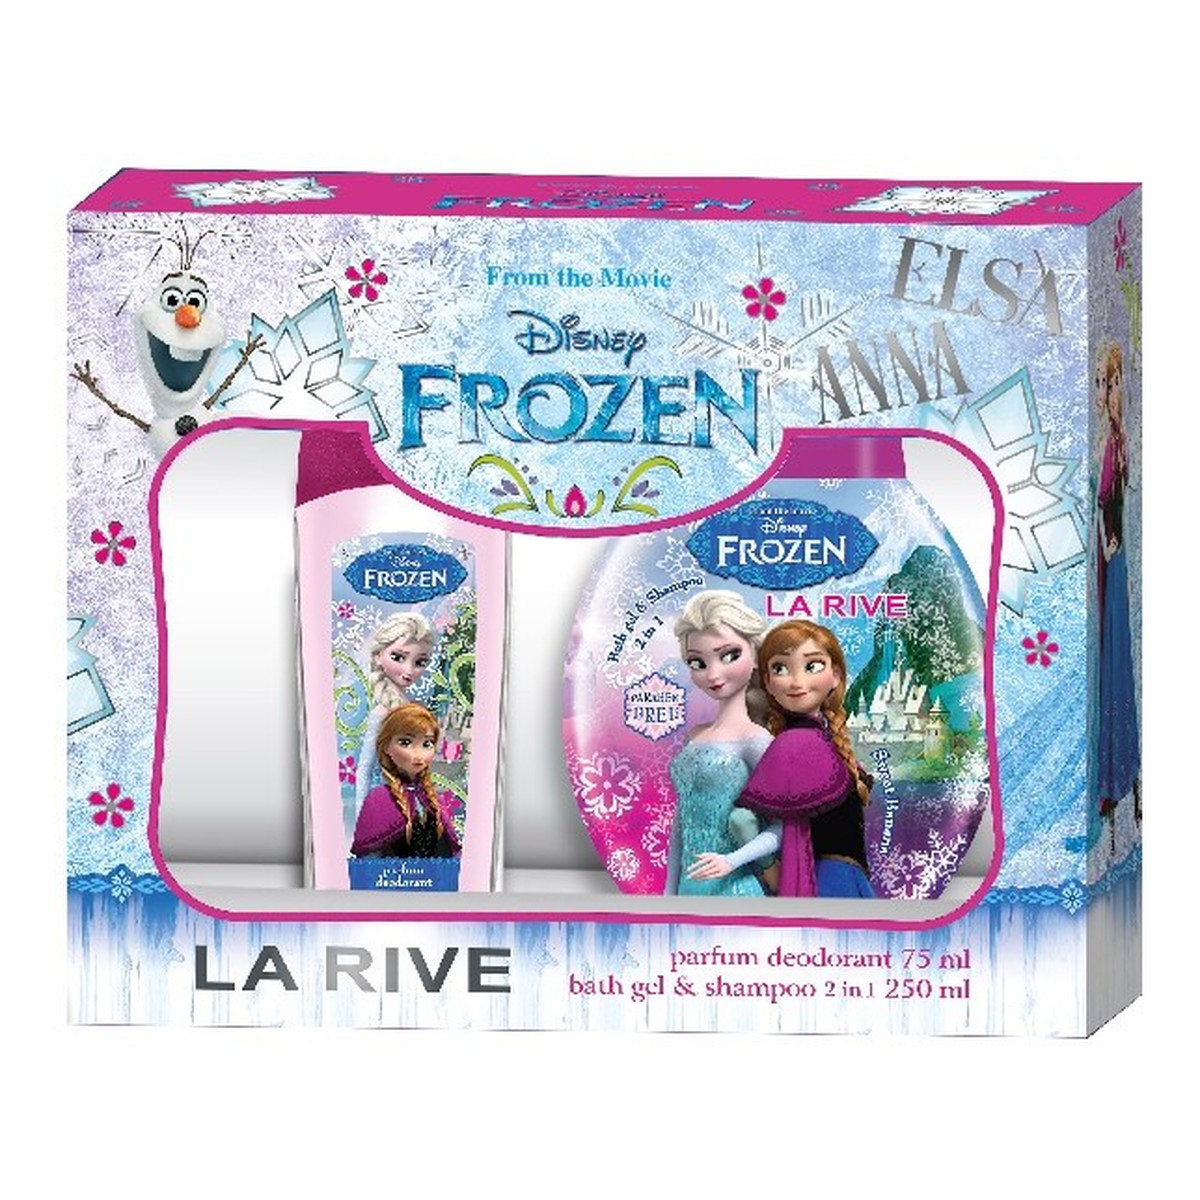 La Rive Disney Frozen zestaw prezentowy (dezodorant perfumowany 75ml + żel pod prysznic 2w1 250ml)